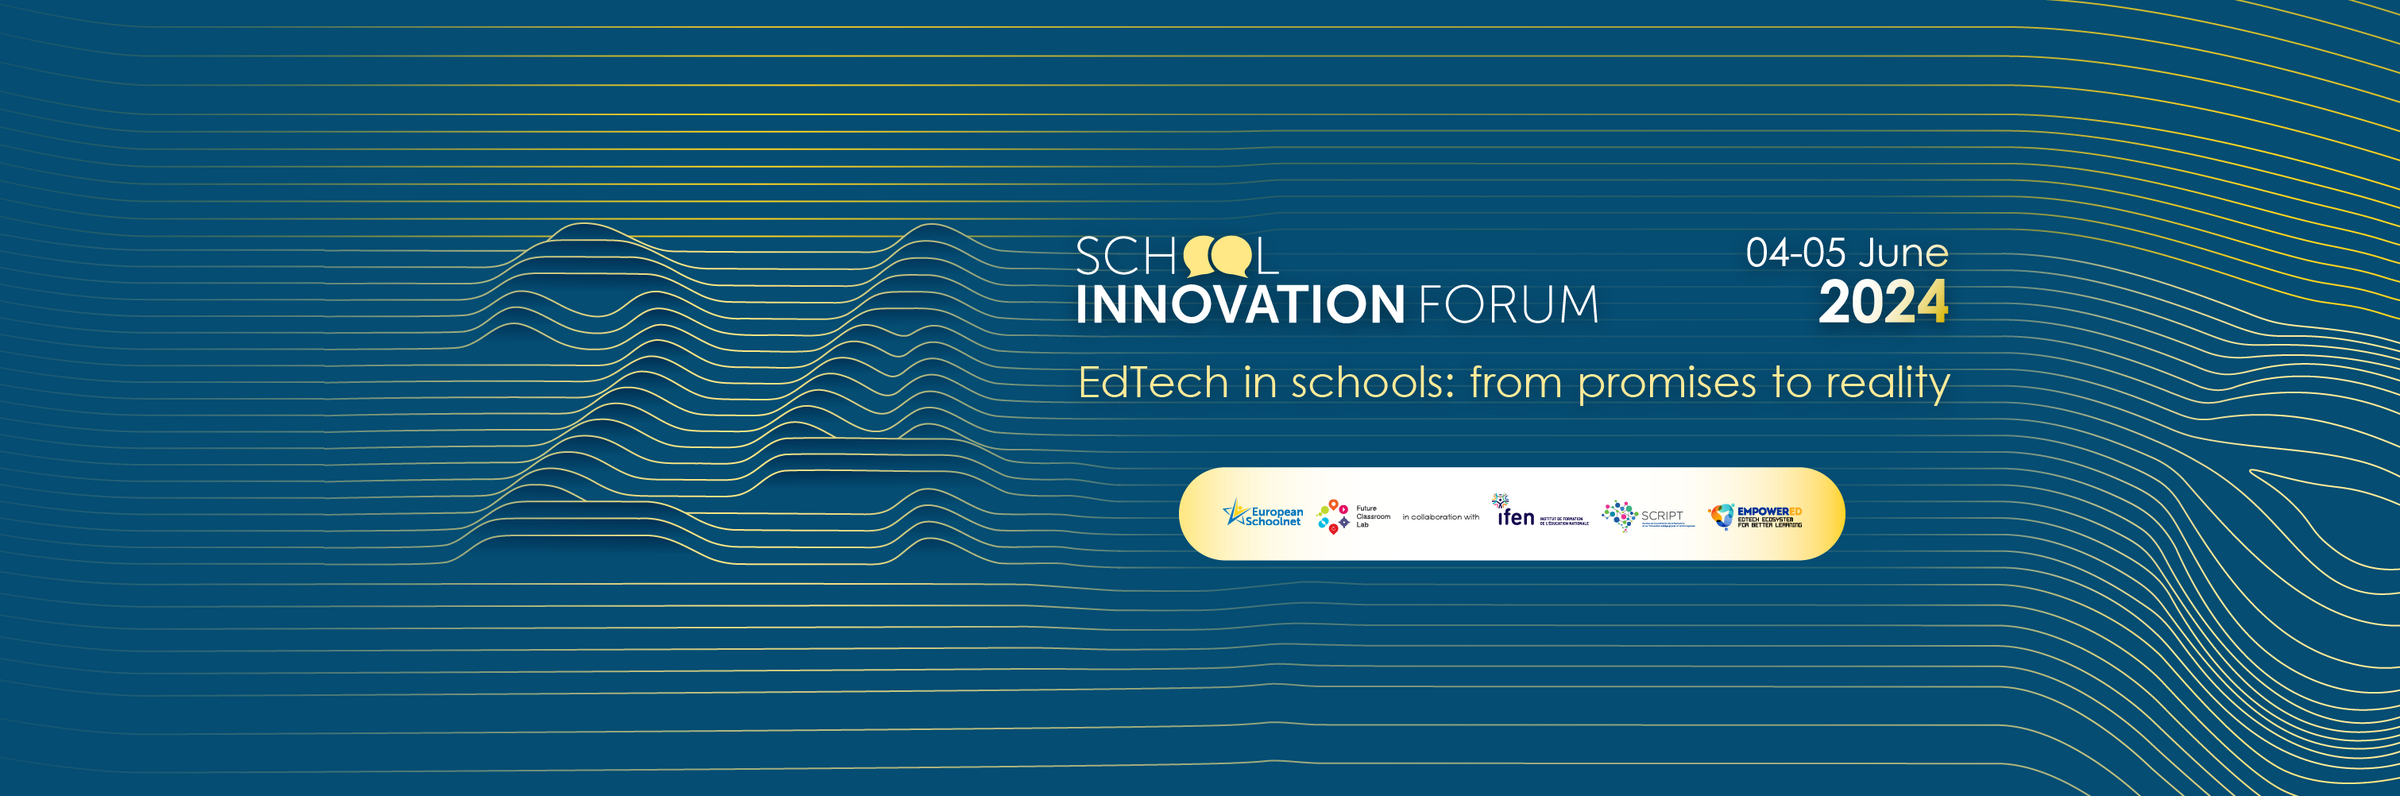 School Innovation Forum 2024